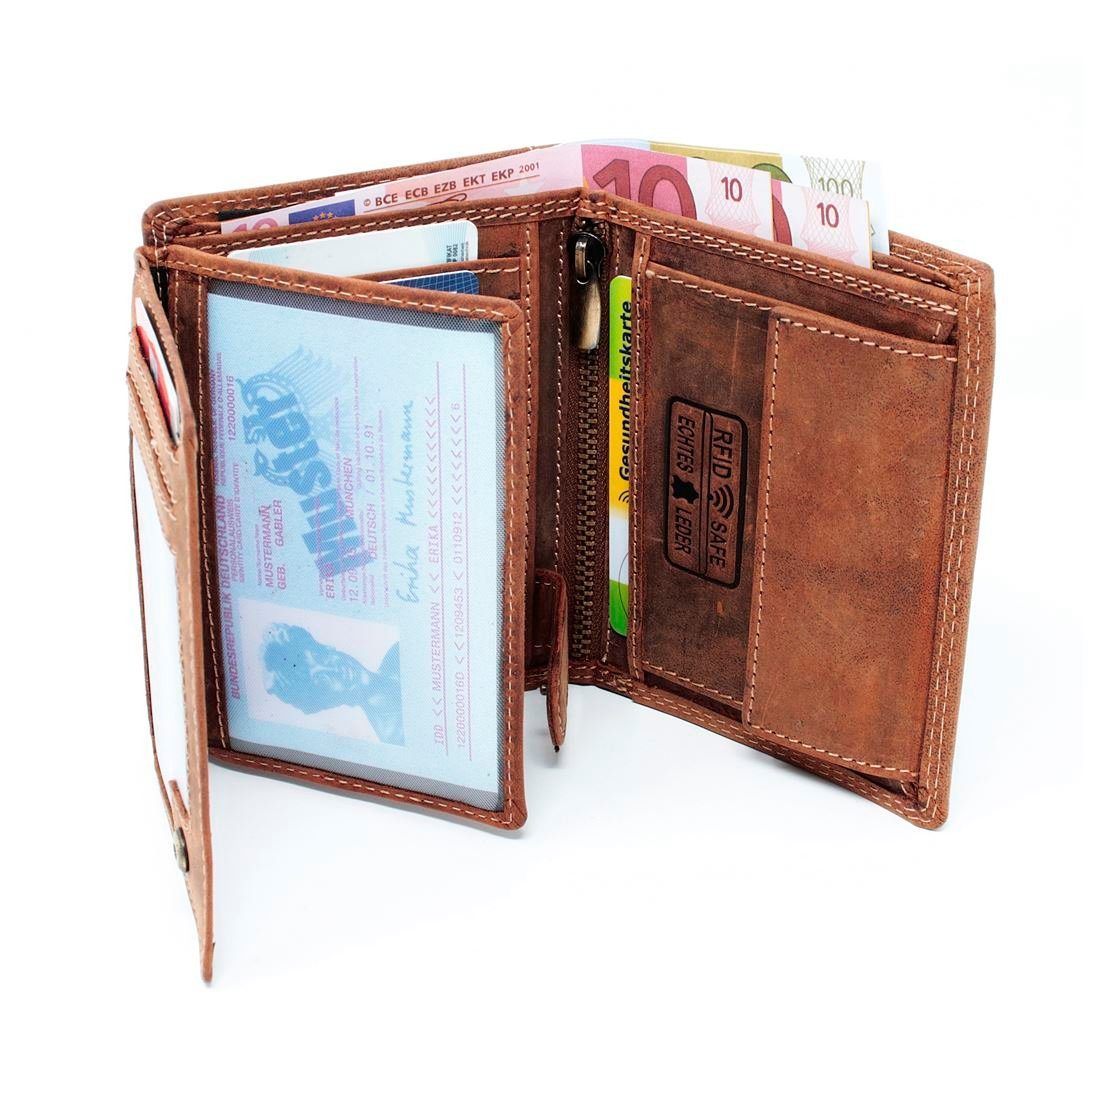 SHG Geldbörse mit Leder Münzfach RFID Portemonnaie Männerbörse Börse, Geldbeutel Geldbörse Schutz Lederbörse Brieftasche Herren